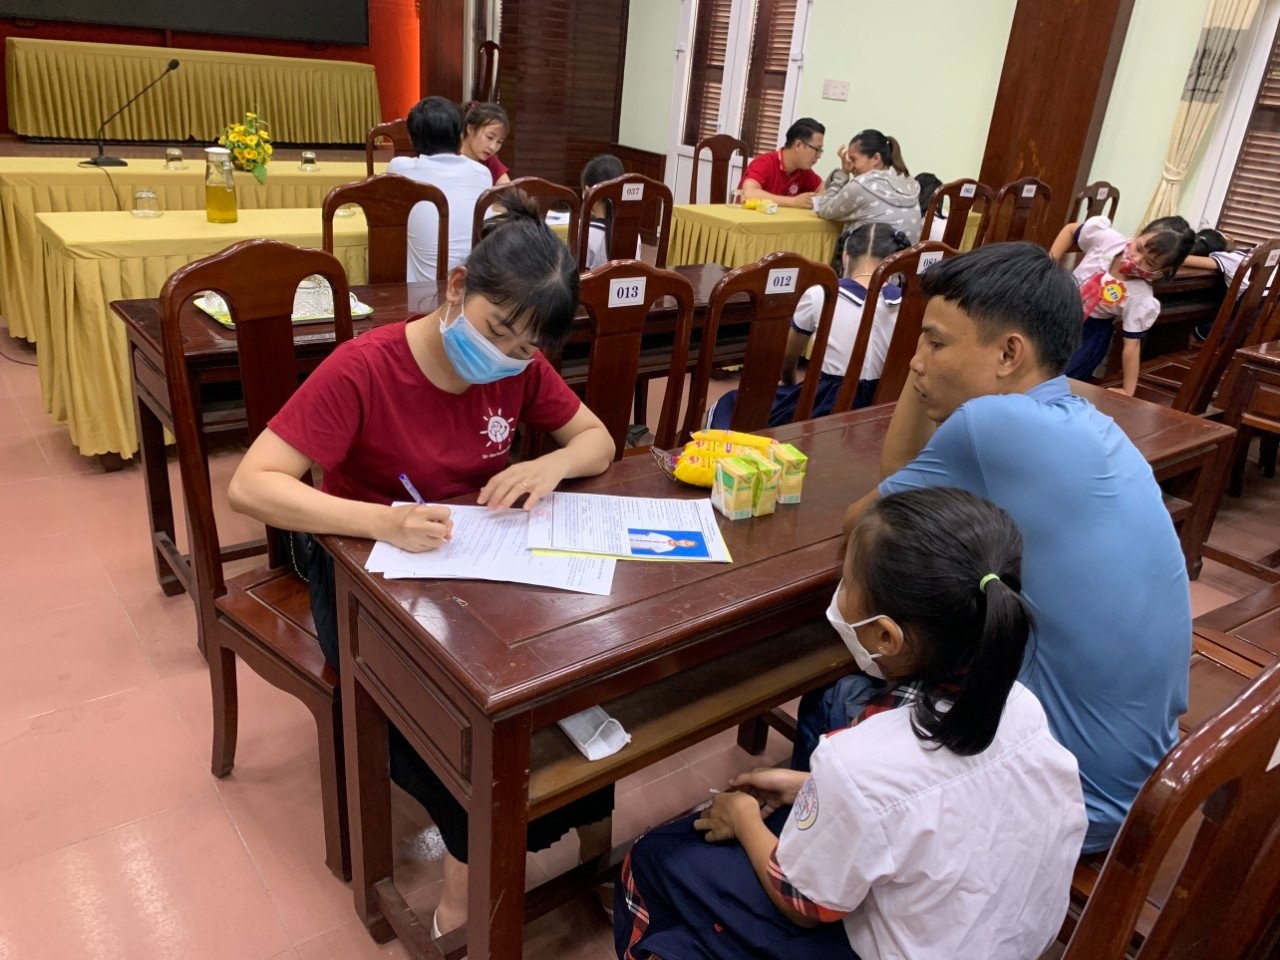 Zhi-Shan Foundation tại Việt Nam phối hợp với đối tác tỉnh Thừa Thiên Huế và Quảng Trị tổ chức gặp mặt, tìm hiểu hoàn cảnh và xét duyệt cấp học bổng dài hạn cho 116 học sinh có hoàn cảnh khó khăn vươn lên học tốt.